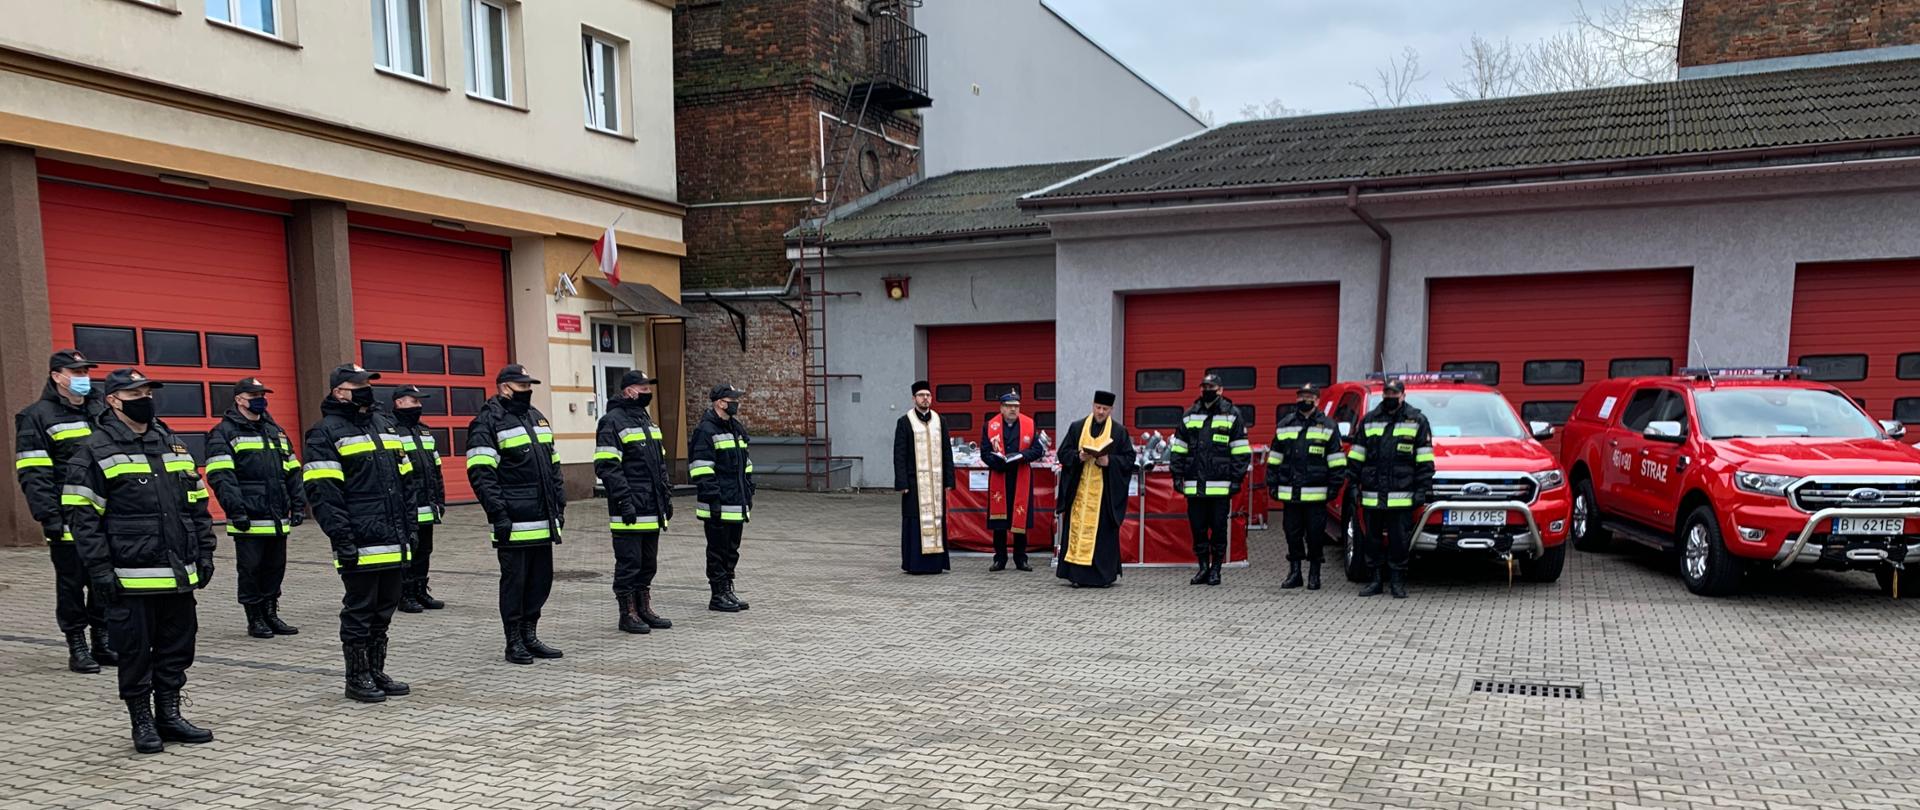 Zdjęcie obrazujące strażaków strażaków ustawionych w dwuszeregu w umundurowaniu dowódczo-sztabowym i kapelani strażaccy w szatach liturgicznych ustawieni podczas uroczystego przekazania sprzętu i pojazdów zakupionych w ramach Programu Współpracy Transgranicznej Polska-Rosja 2014-2020 